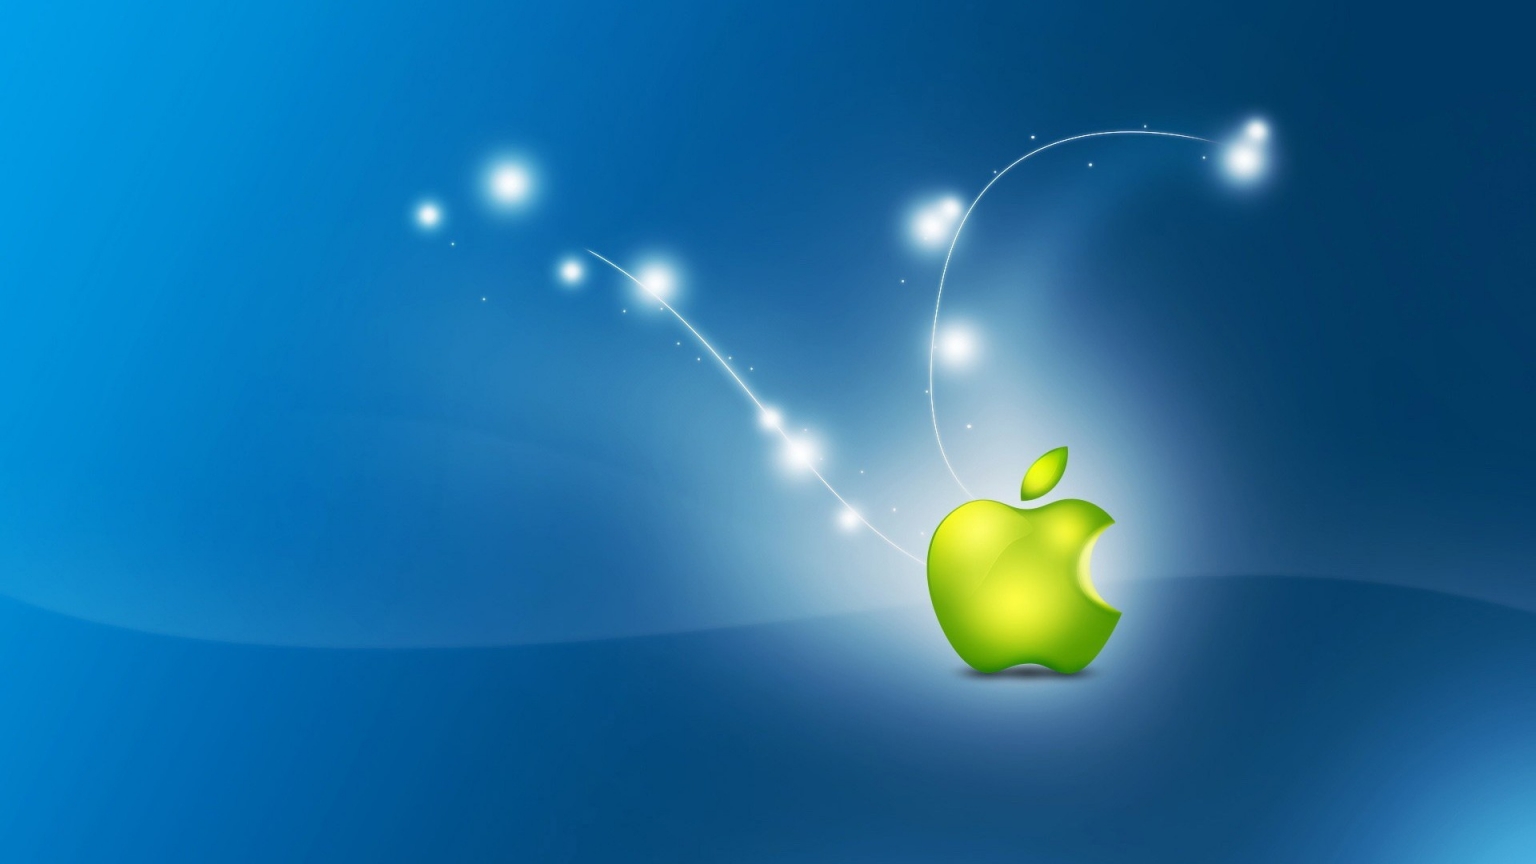 Artistic Apple Logo for 1536 x 864 HDTV resolution